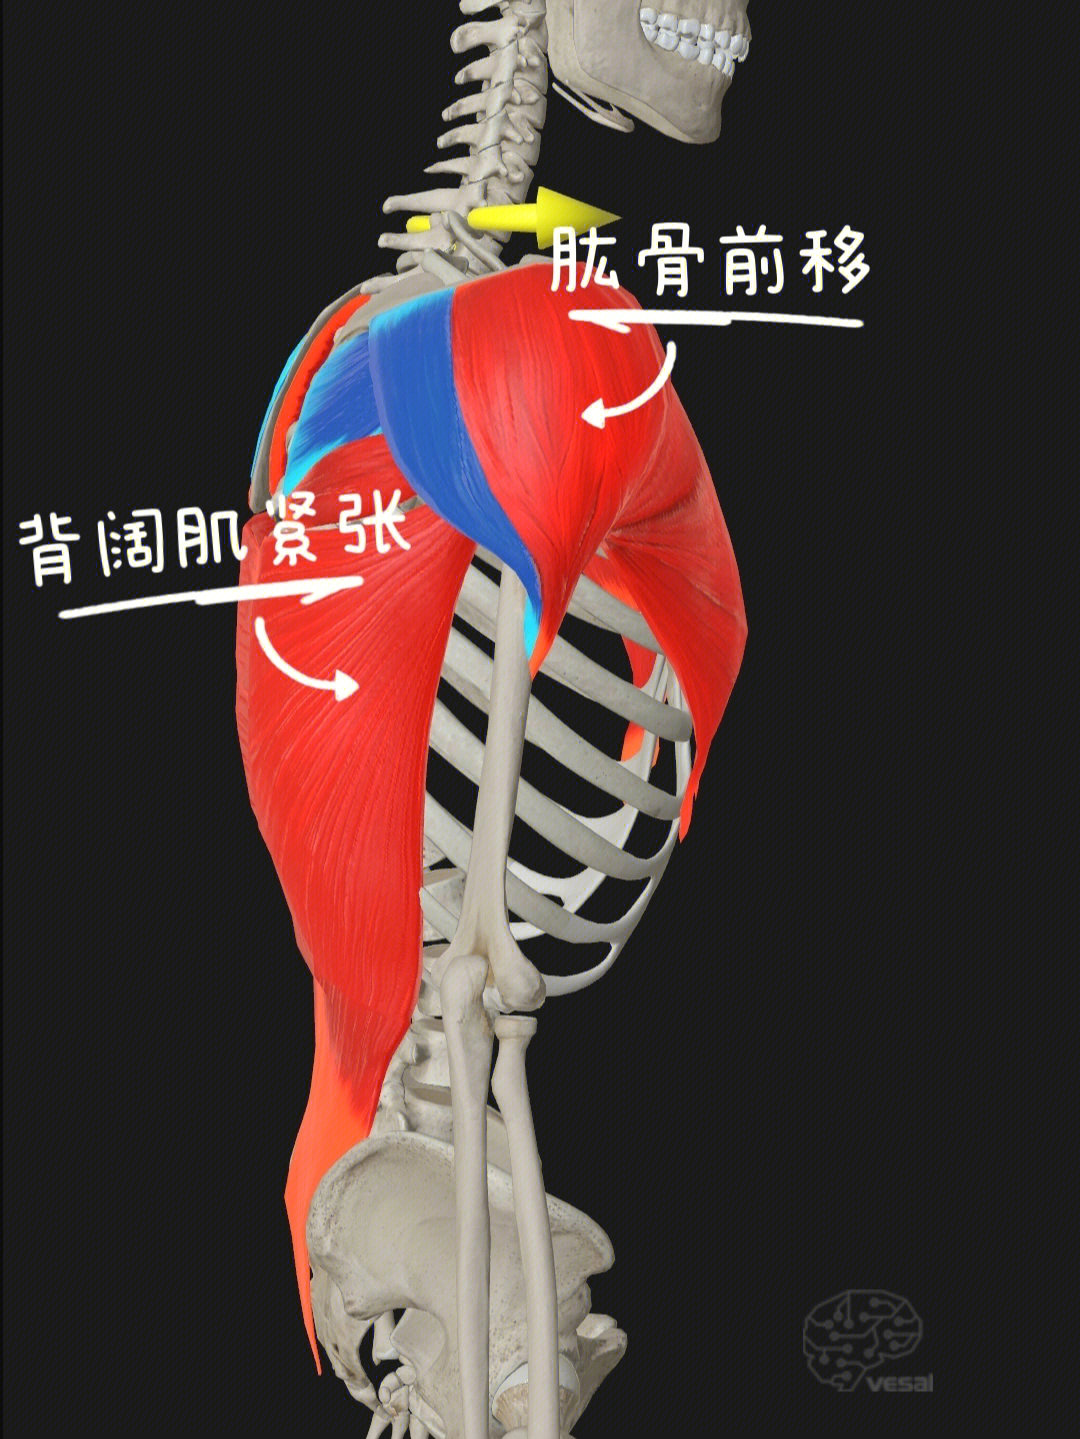 87形成原因:肱骨内旋肌群紧张(包括:胸大肌,胸小肌,三角肌前束,大圆